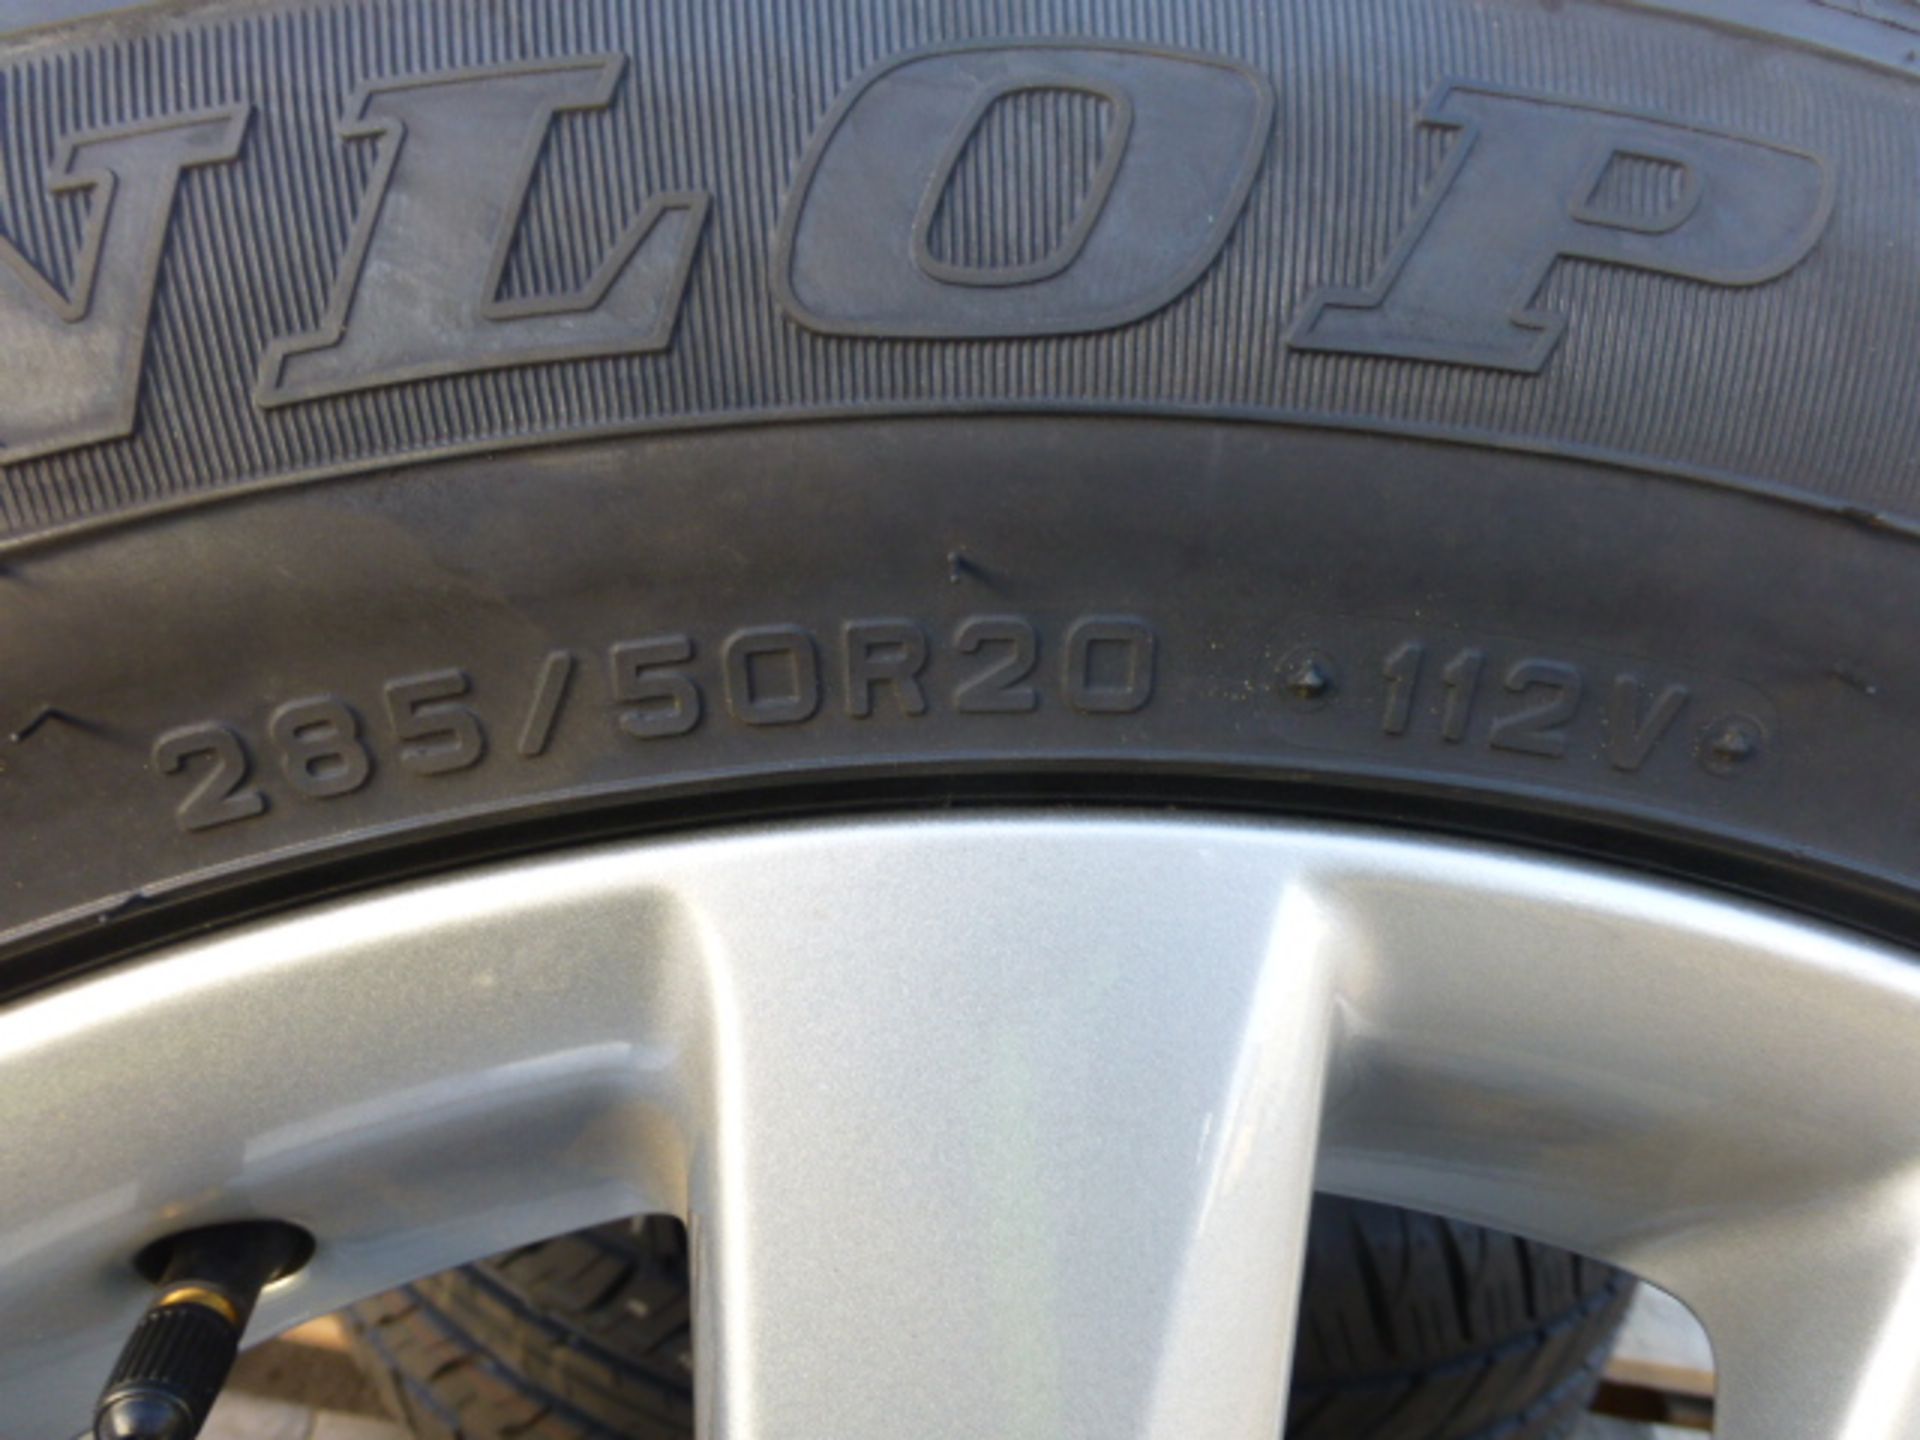 4 x Dunlop PT2A Grandtrek 285/50R20 Tyres on Land Cruiser V8 Rims - Image 5 of 6